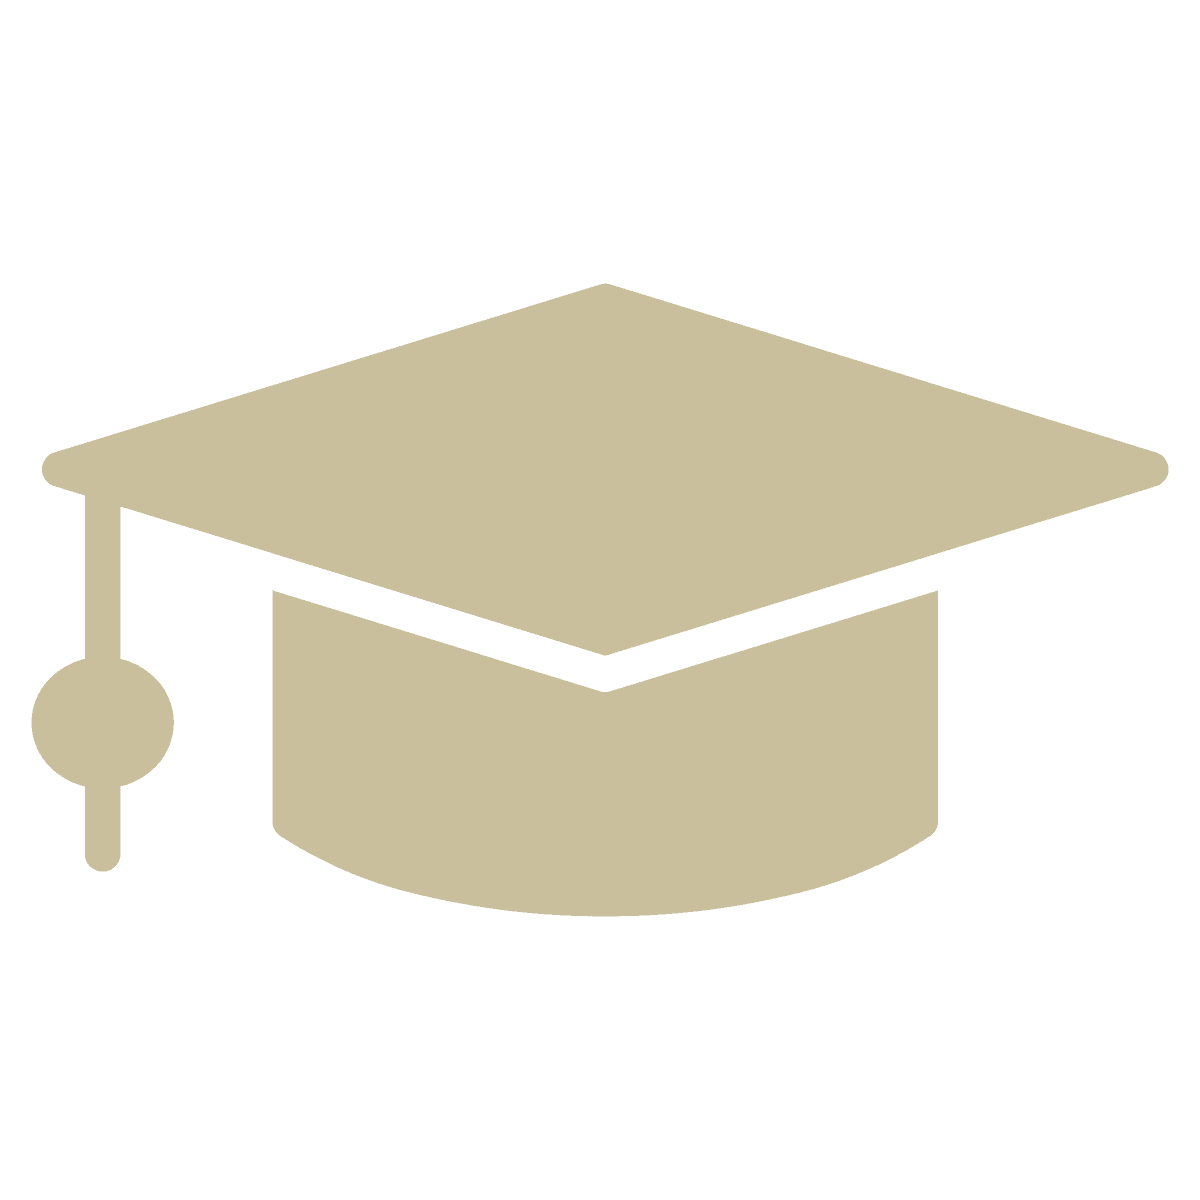 graduation cap, school